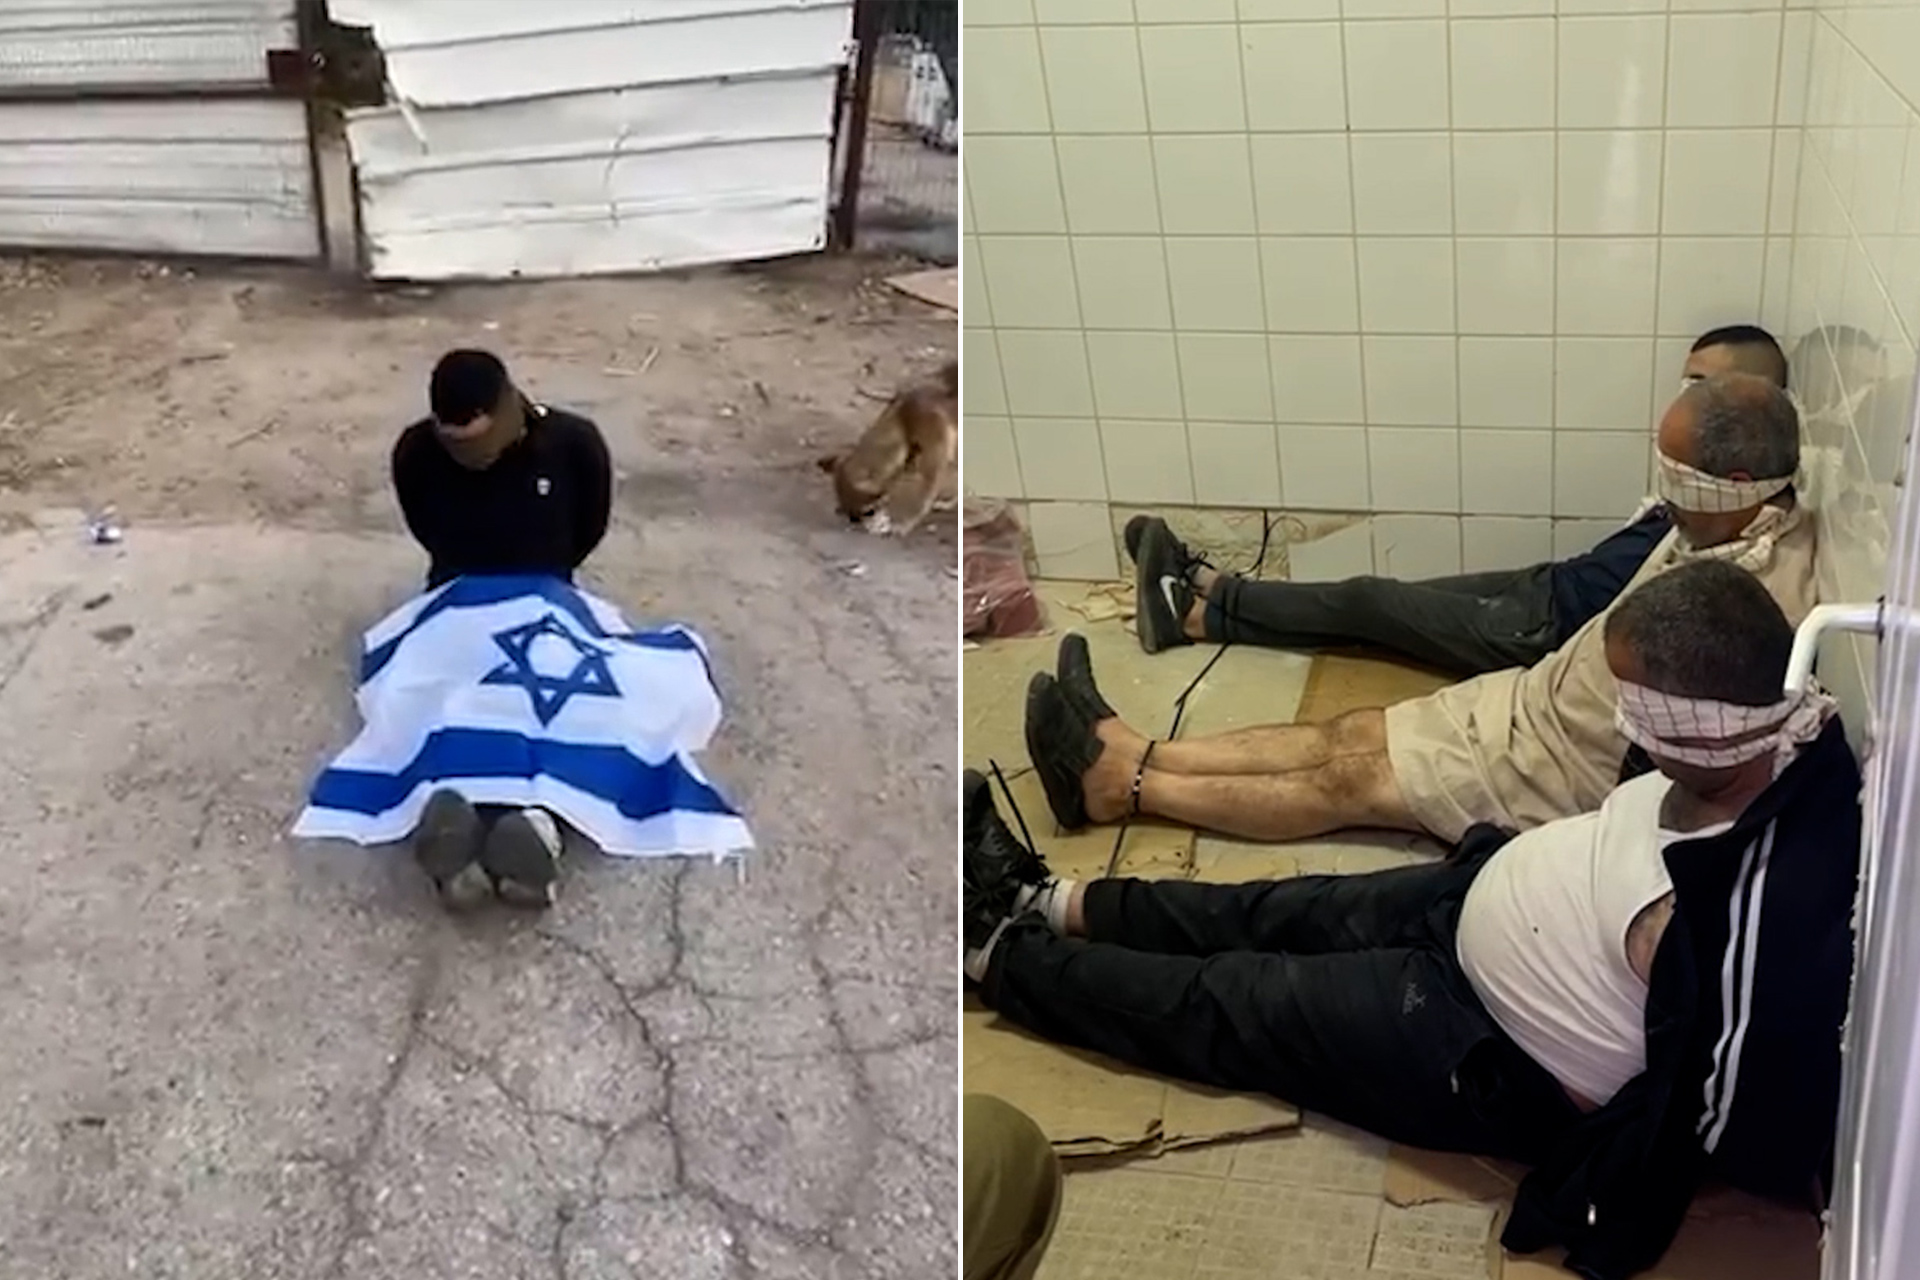 مقاطع فيديو قاسية.. مرصد حقوقي يوثق تعذيب جنود الاحتلال لمعتقلين فلسطينيين | أخبار – البوكس نيوز